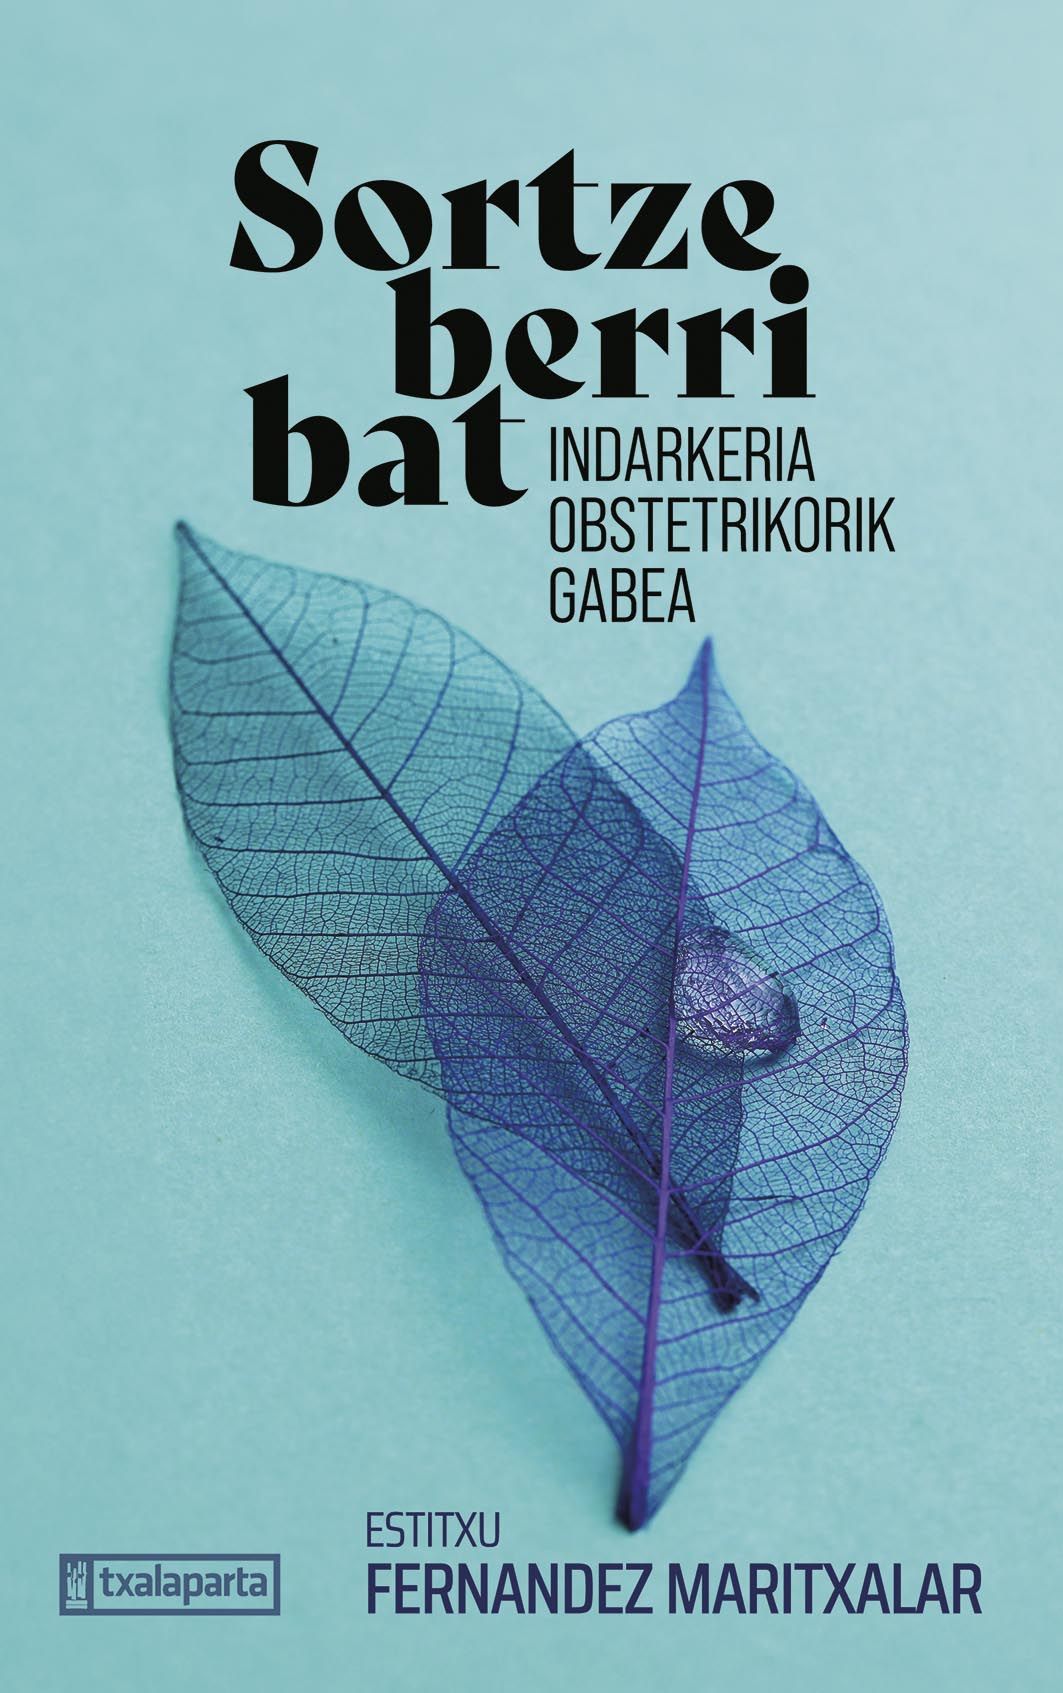 Estitxu Fernandez Maritxalar / 'Sortze berri bat indarkeria obstetrikorik gabea'